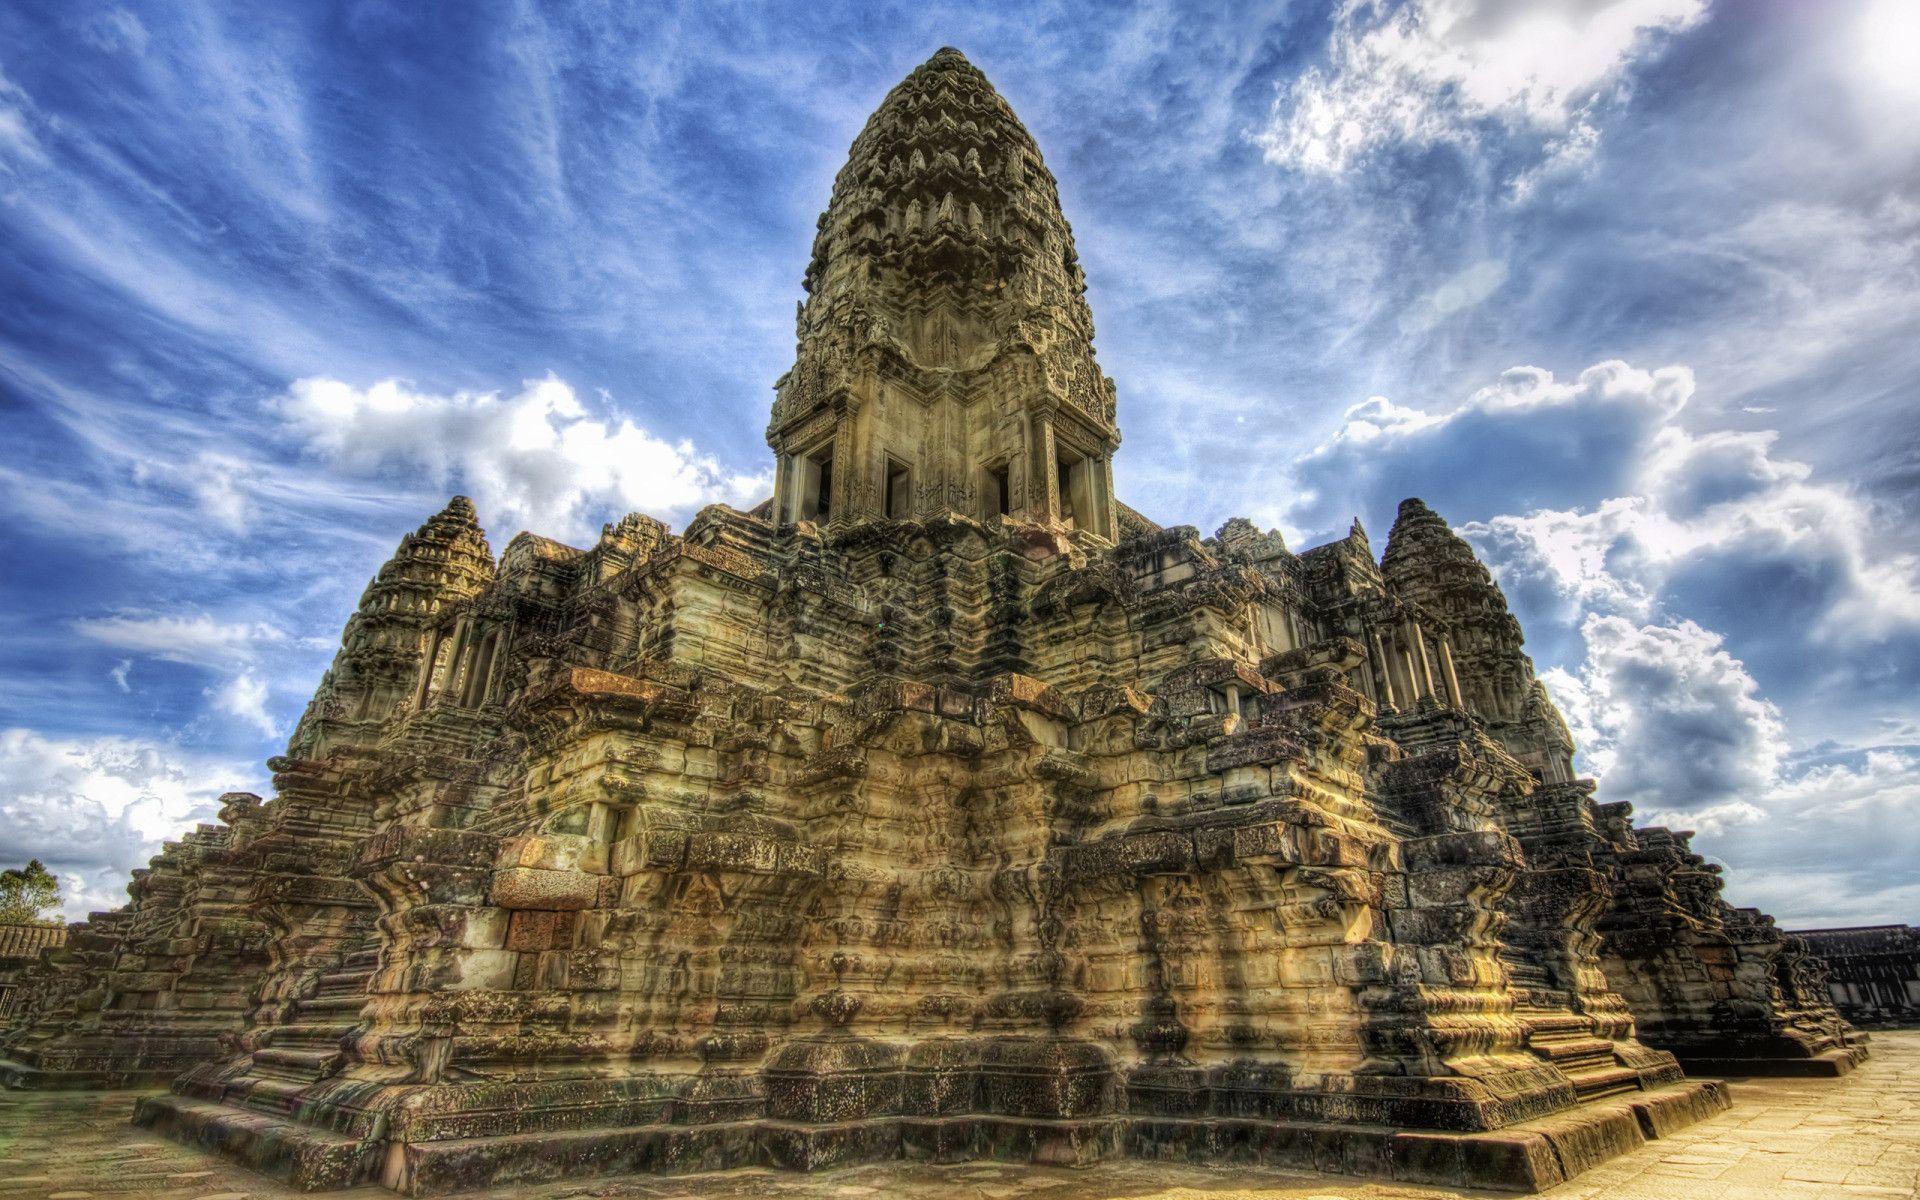 Temple in Angkor Wat widescreen wallpaper. Wide